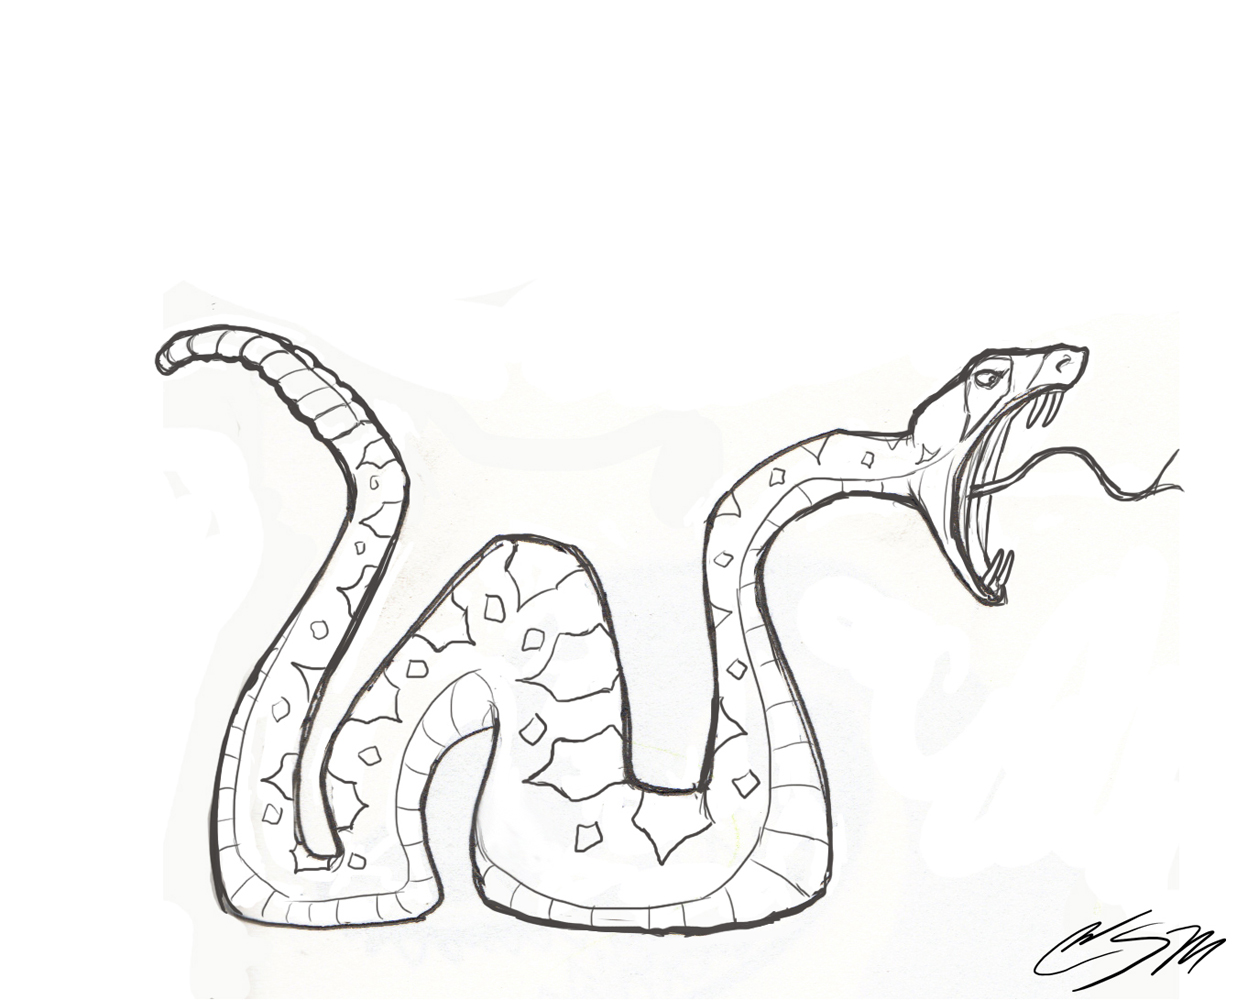 Rattlesnake Drawing - Gallery